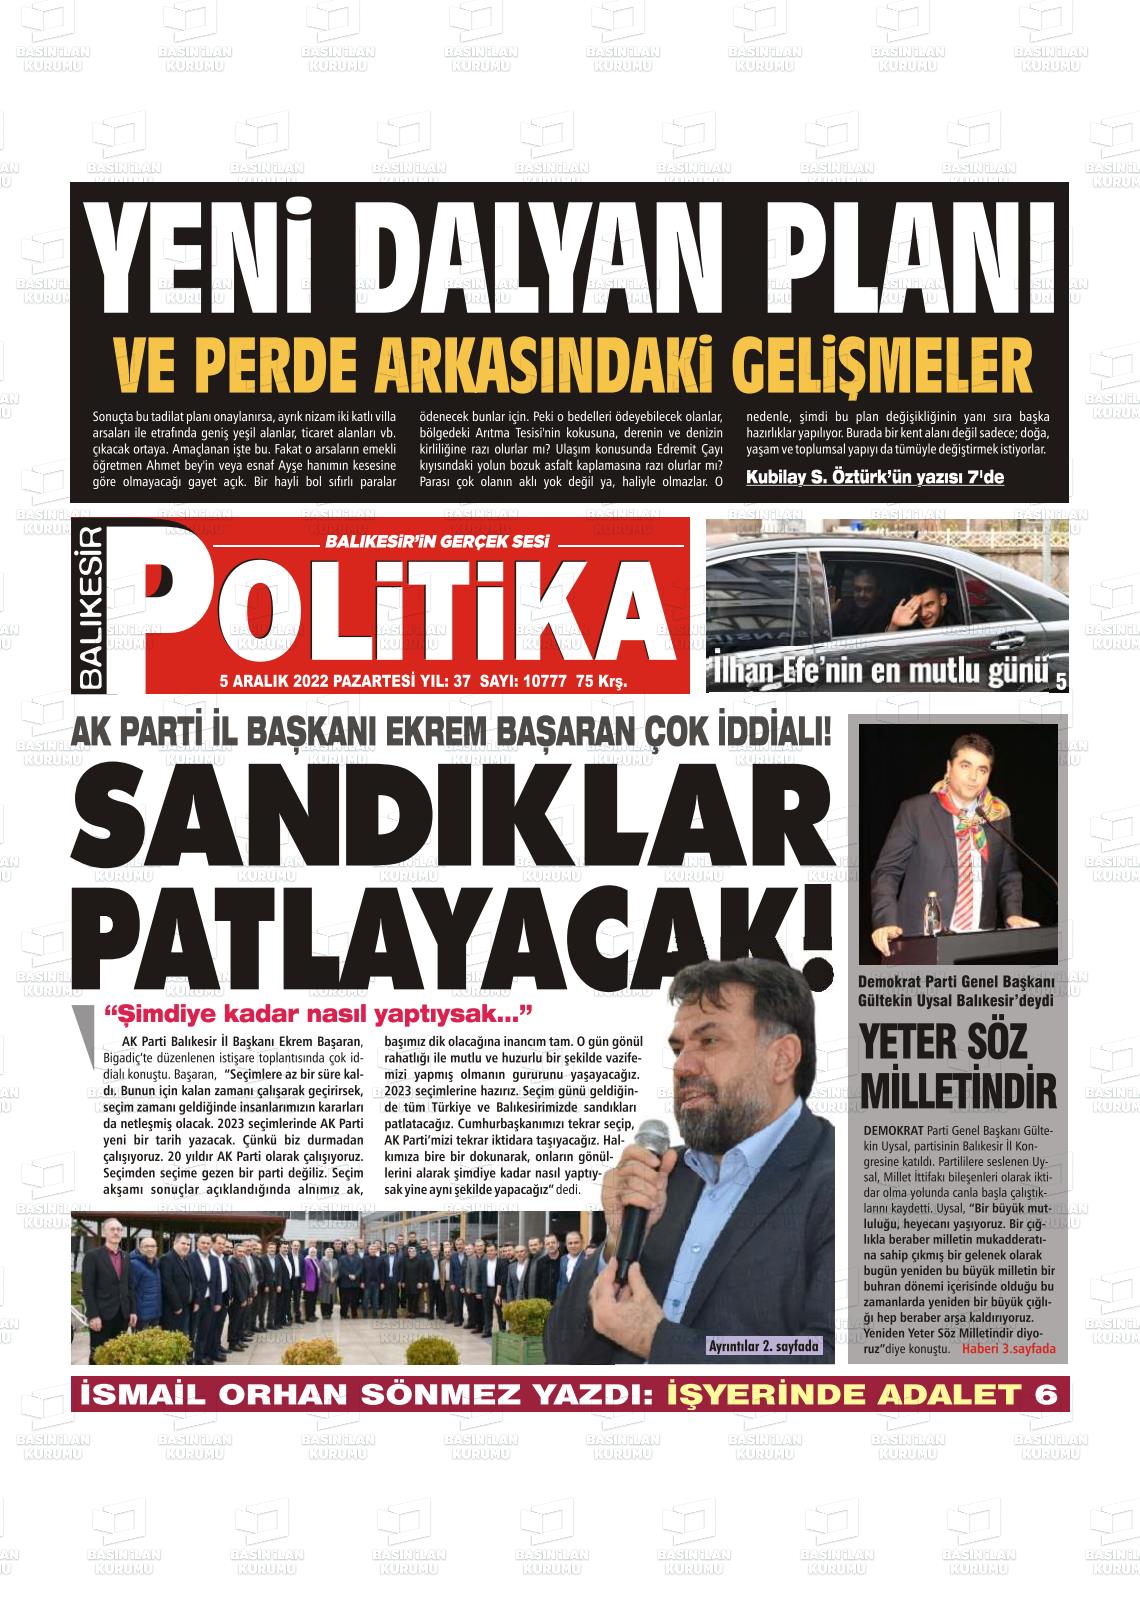 05 Aralık 2022 Balıkesir Politika Gazete Manşeti